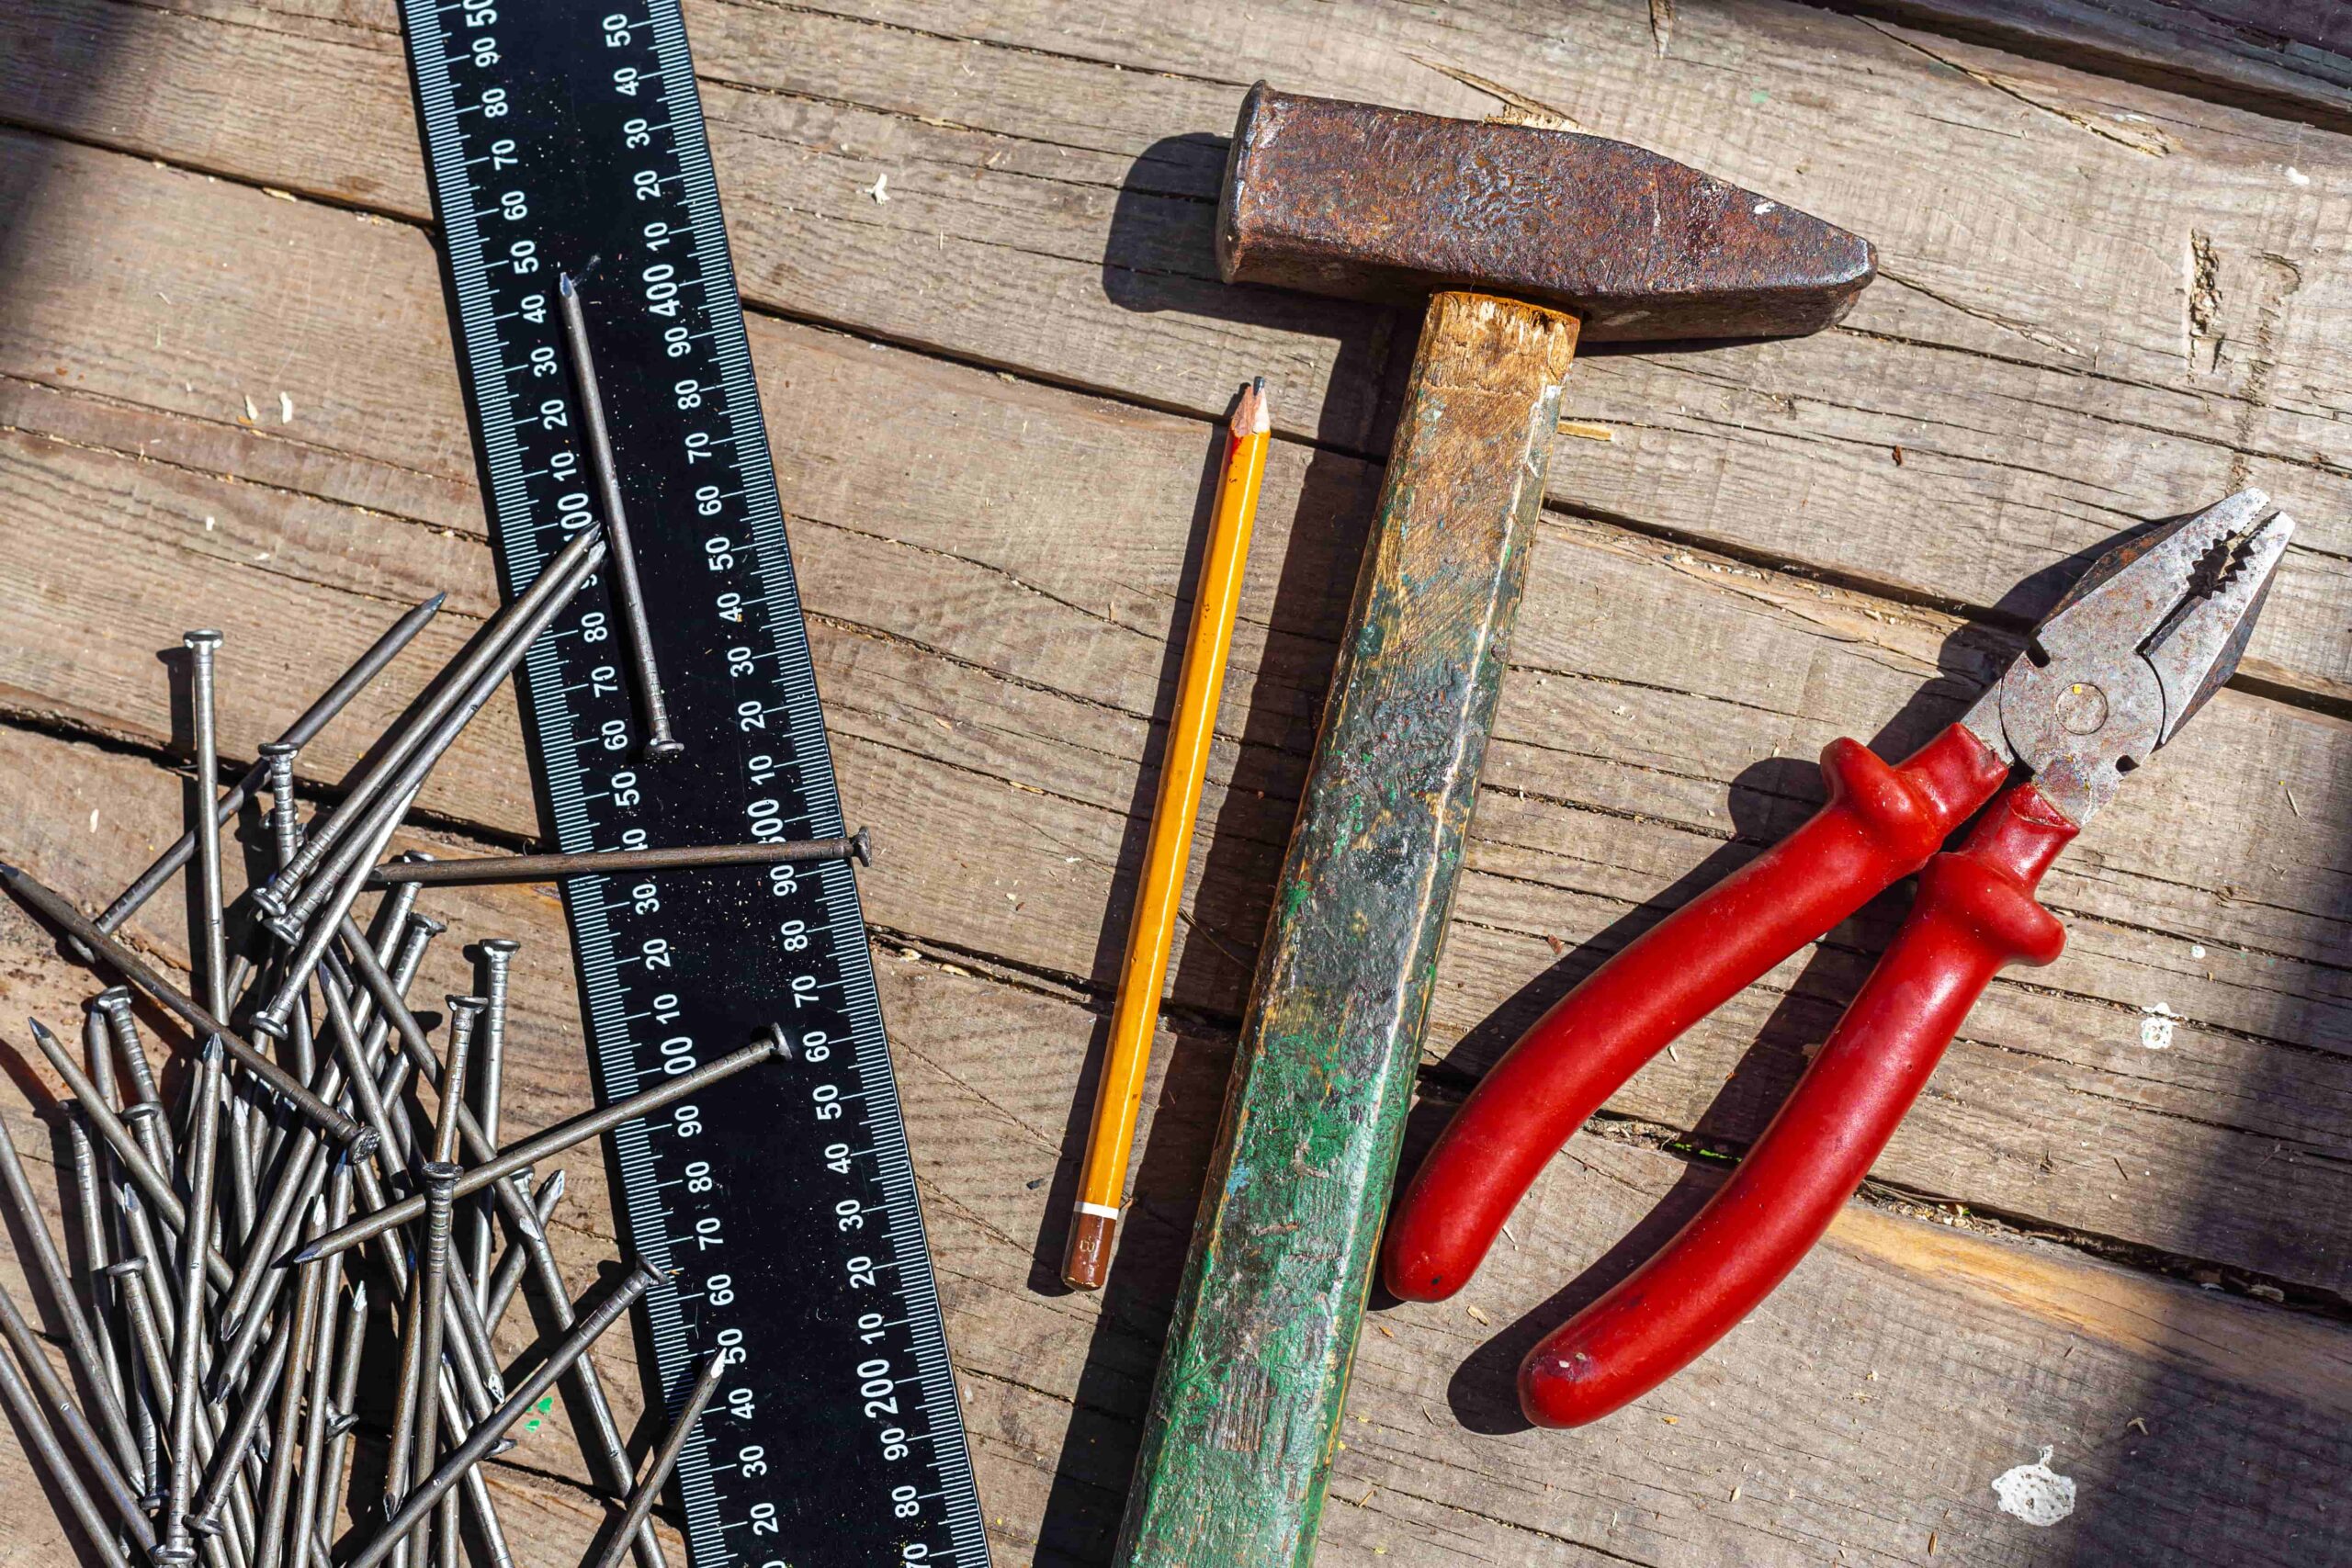 Tööriistade rent Tartus Pakutakse mitmekülgset tööriistade renditeenust, mis võimaldab nii eraisikutel kui ettevõtetel säästa kuludelt, mis muidu kaasneksid töö